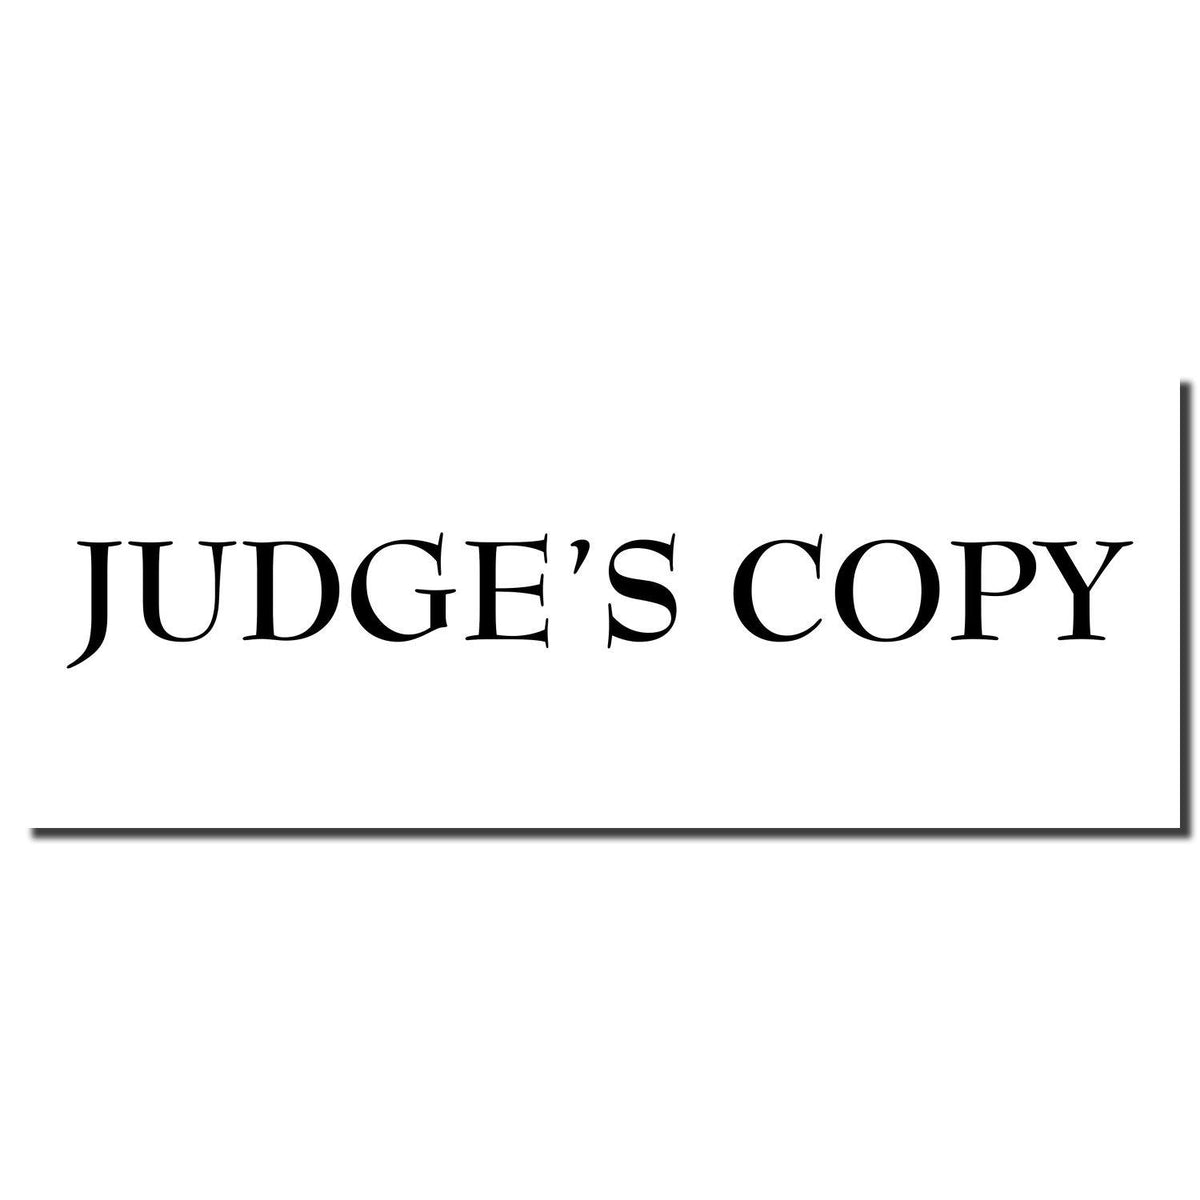 Enlarged Imprint Judges Copy Legal Rubber Stamp Sample